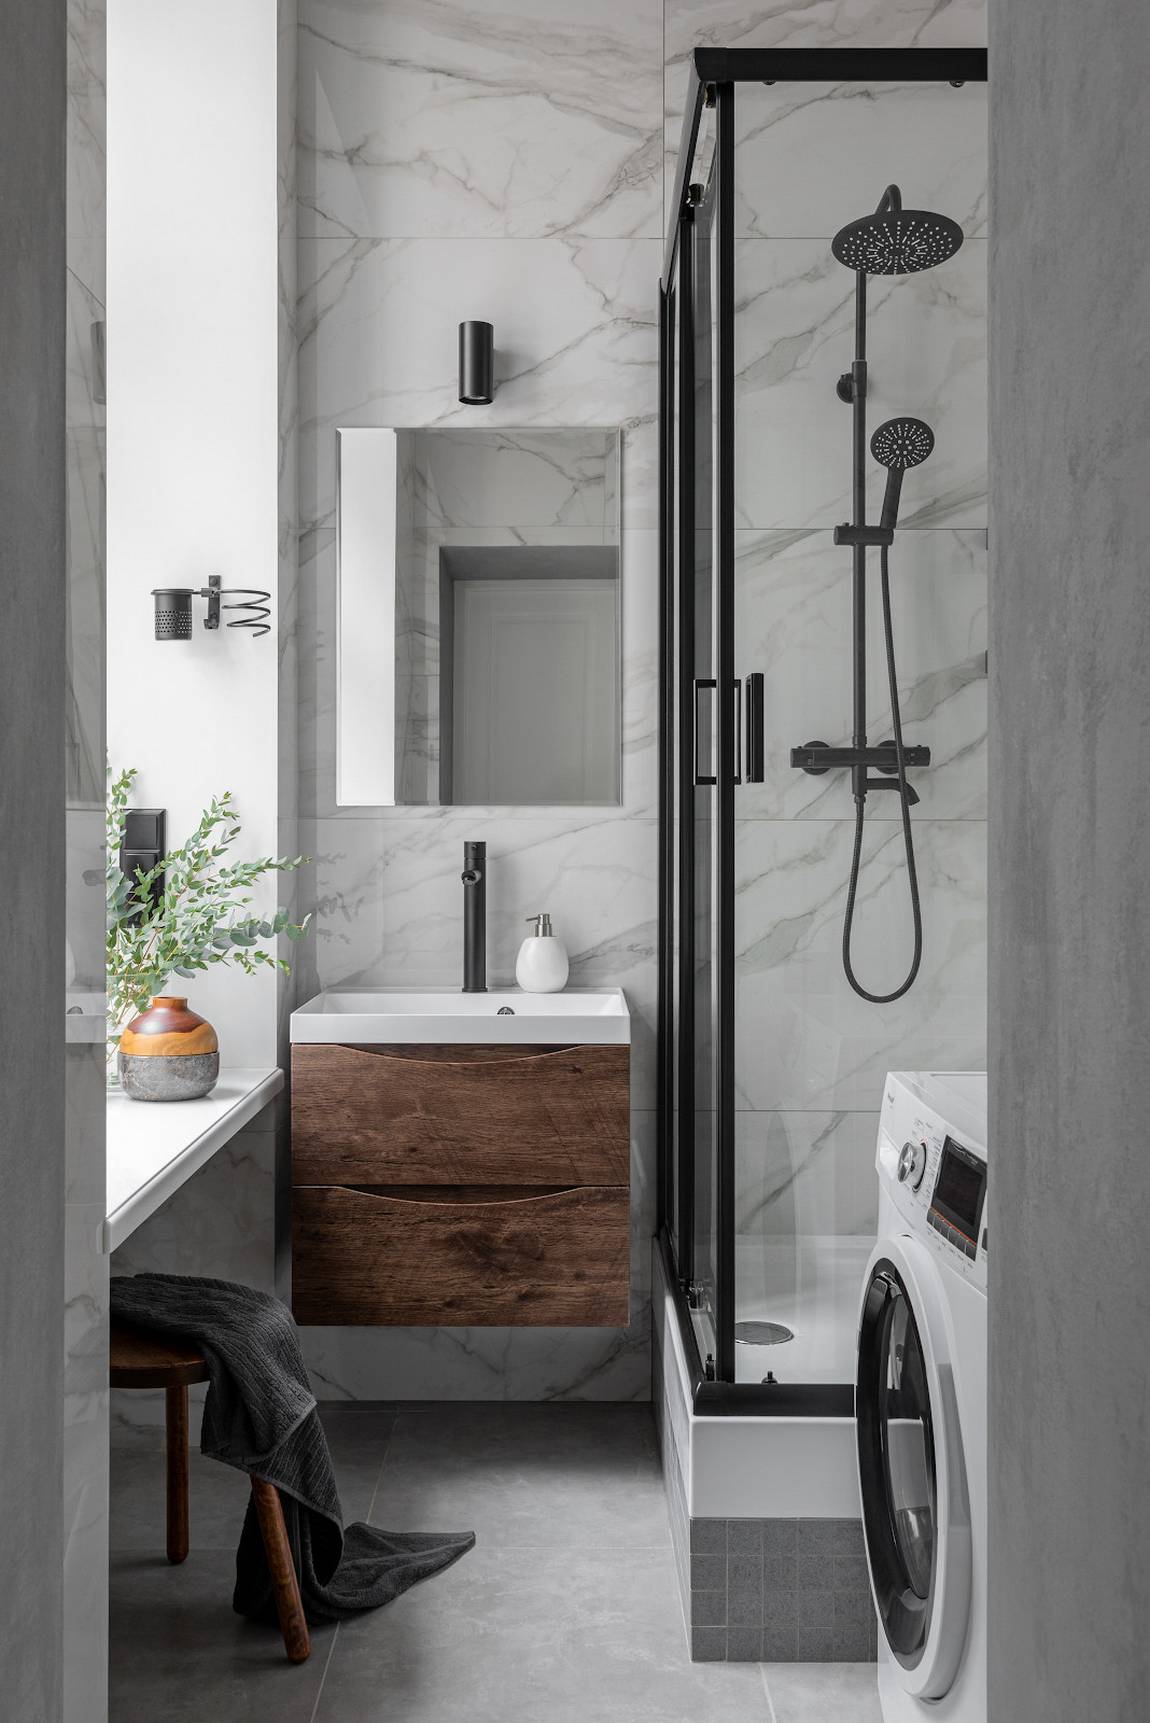 Phòng tắm có diện tích rất nhỏ với chiếc máy giặt được đặt gọn gàng ở góc, buồng tắm nâng cao hơn so với mặt sàn khoảng 50cm, phân vùng với bồn rửa bằng của kính trượt trong suốt.